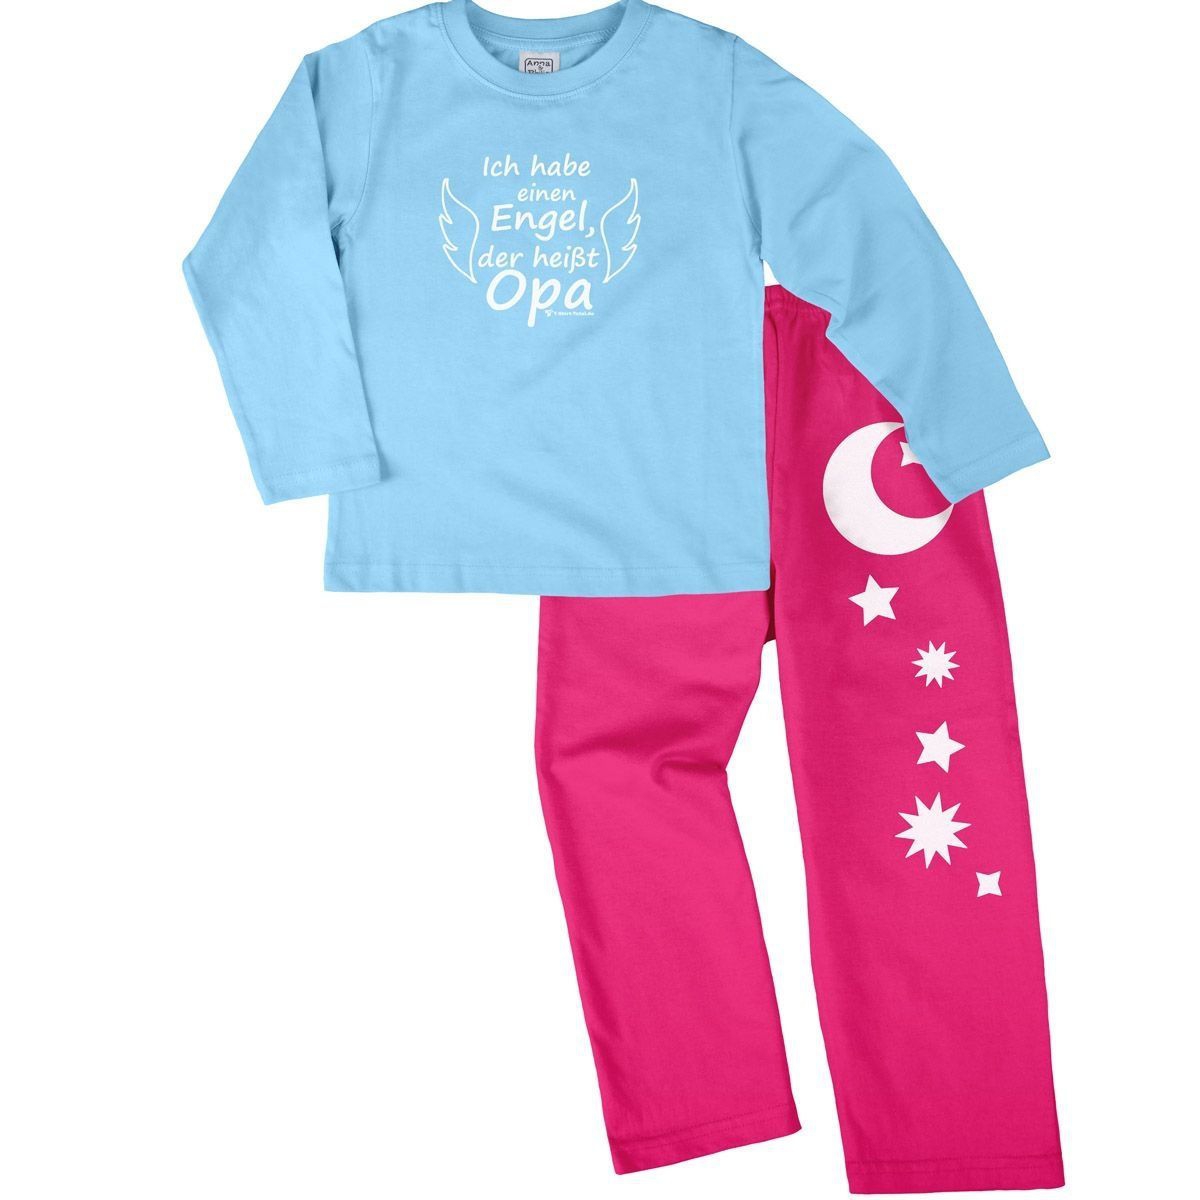 Engel Opa Pyjama Set hellblau / pink 110 / 116